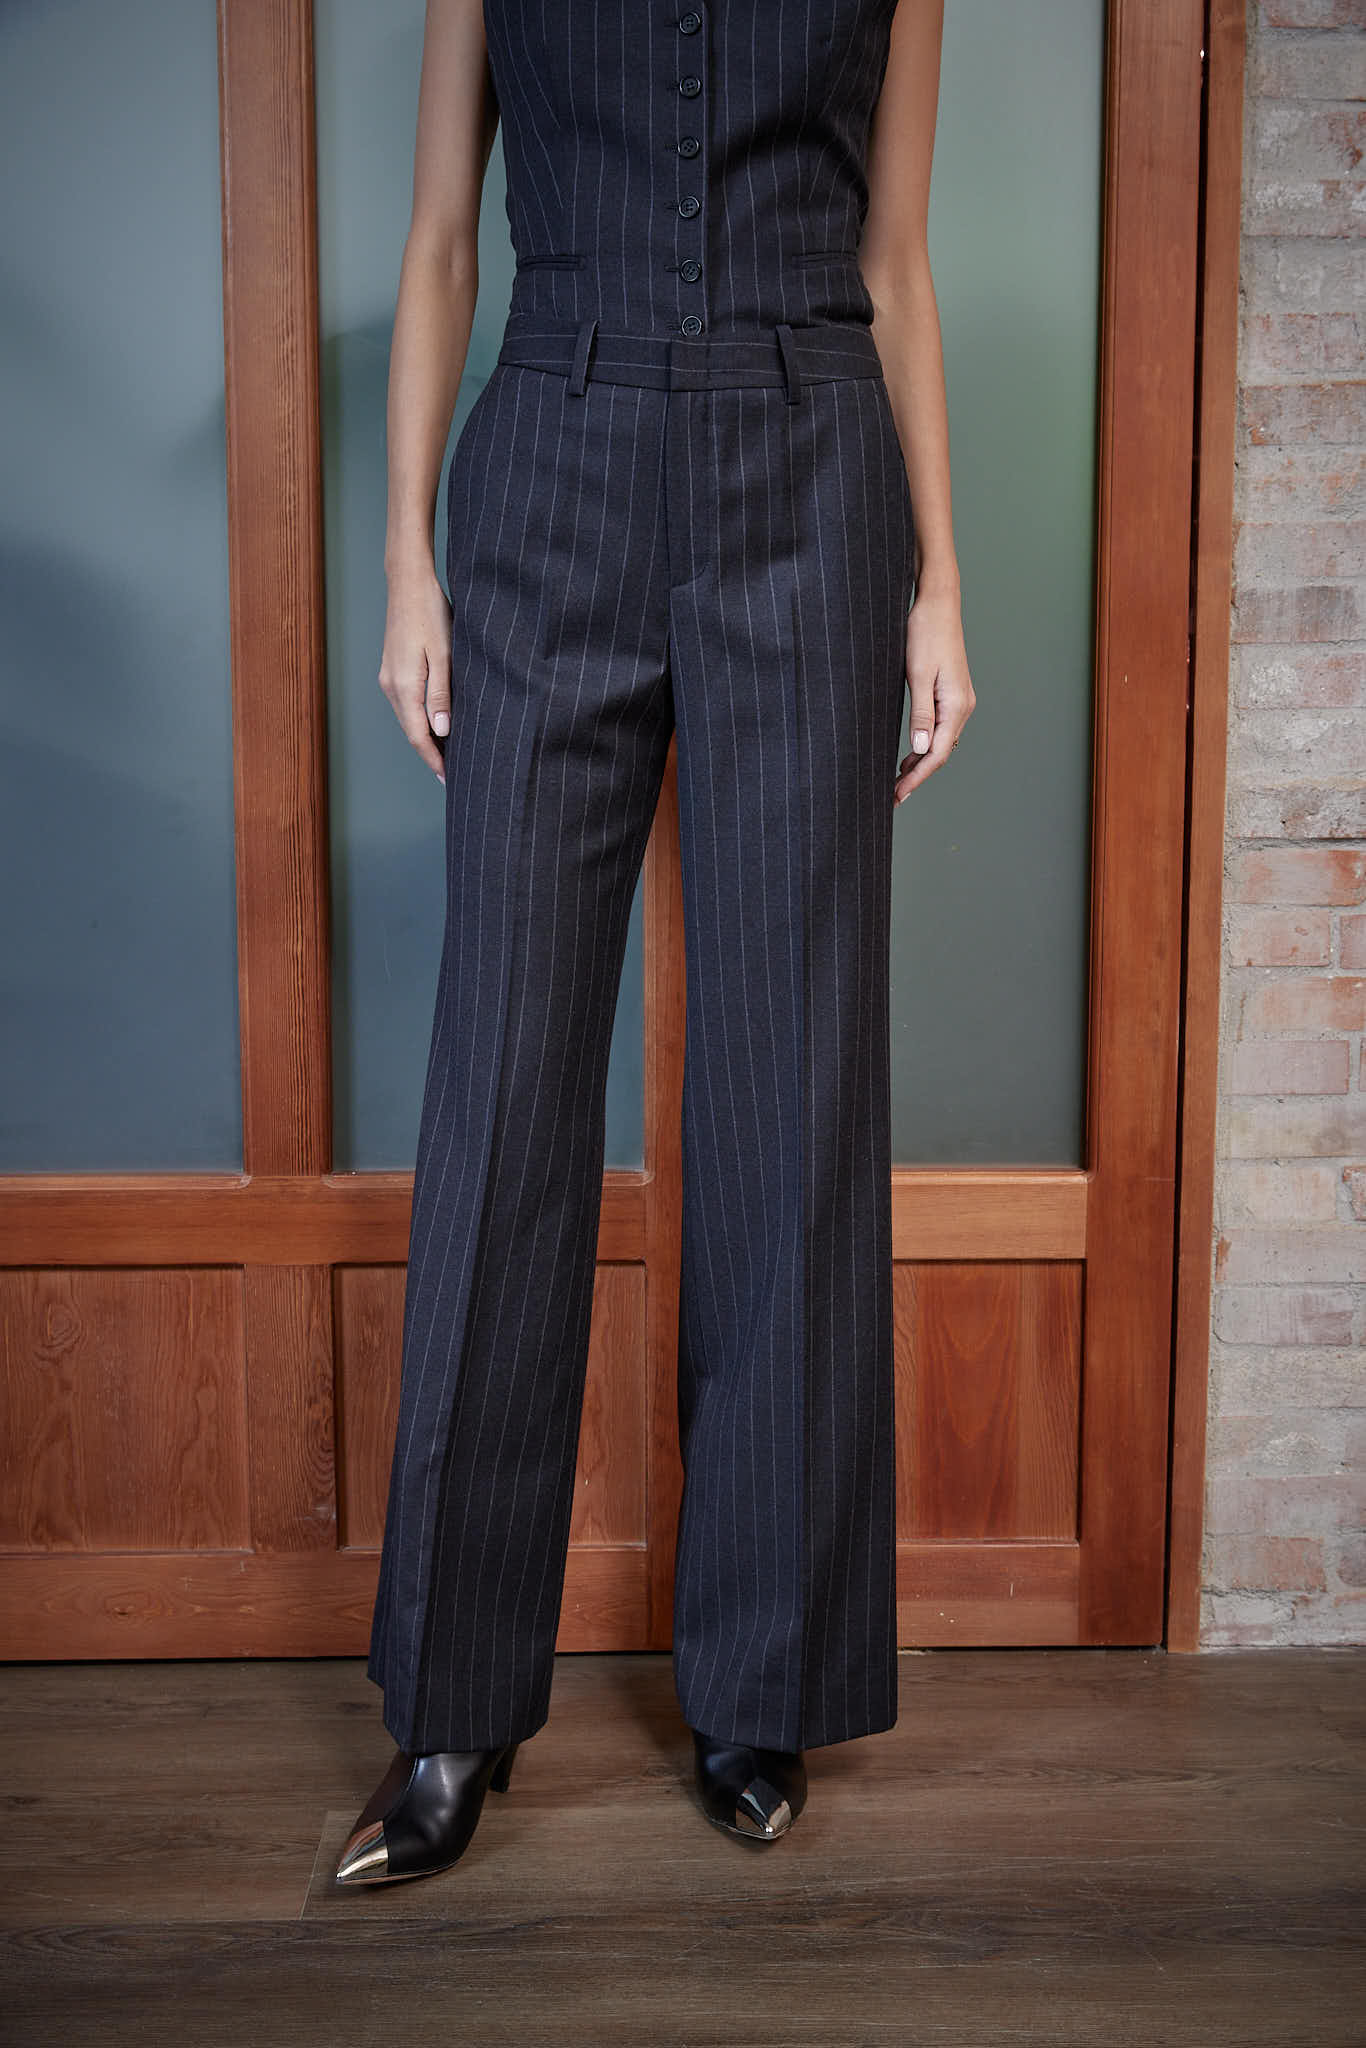 Bordeaux Trouser – Flared trousers in pinstripe